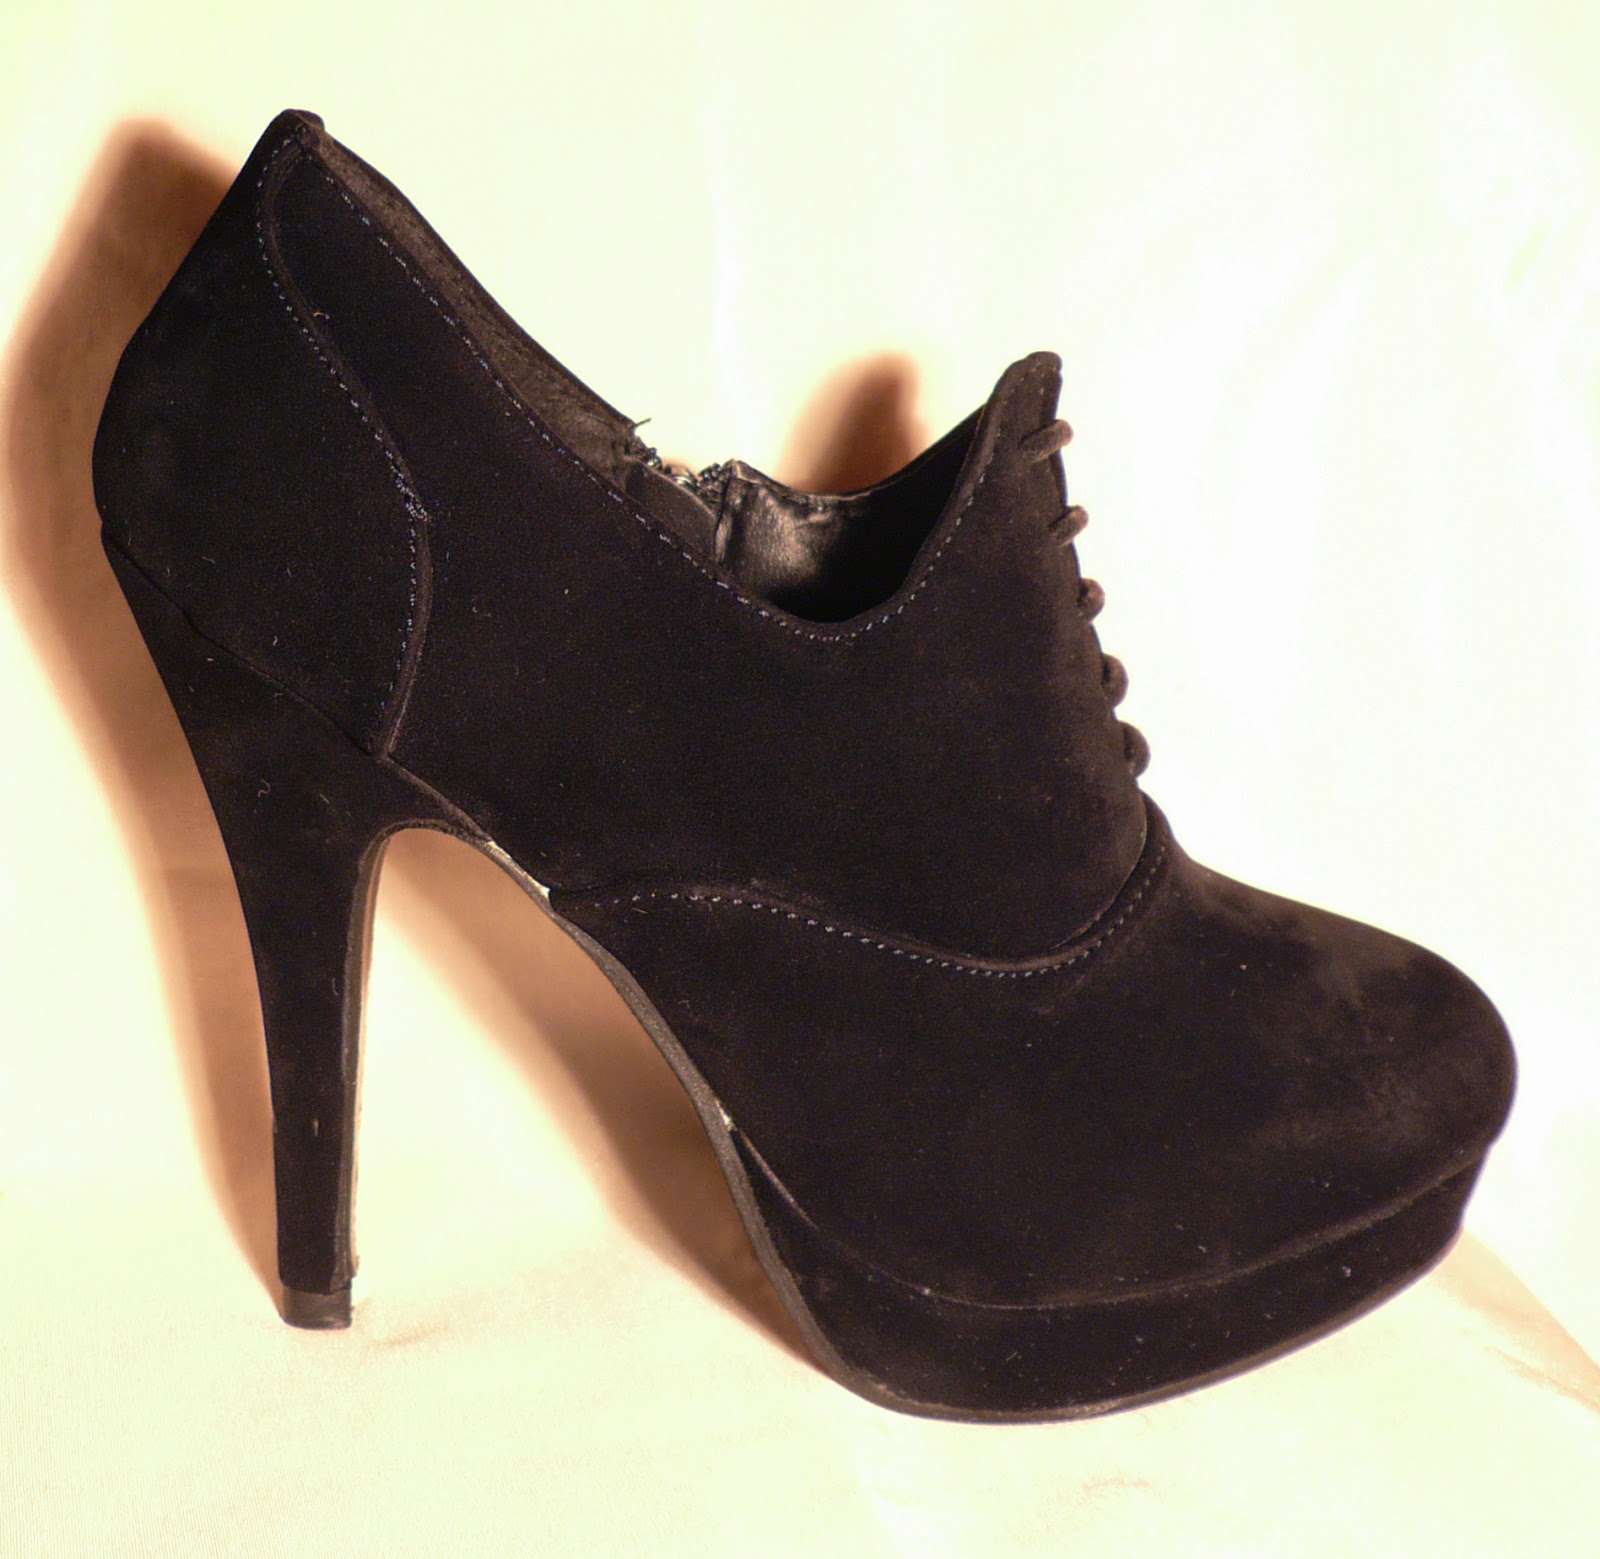 http://www.ebay.fr/itm/bottines-femme-37-38-39-40-low-boots-talons-hauts-sexy-facon-peau-de-peche-/300816759044?ssPageName=STRK:MESE:IT